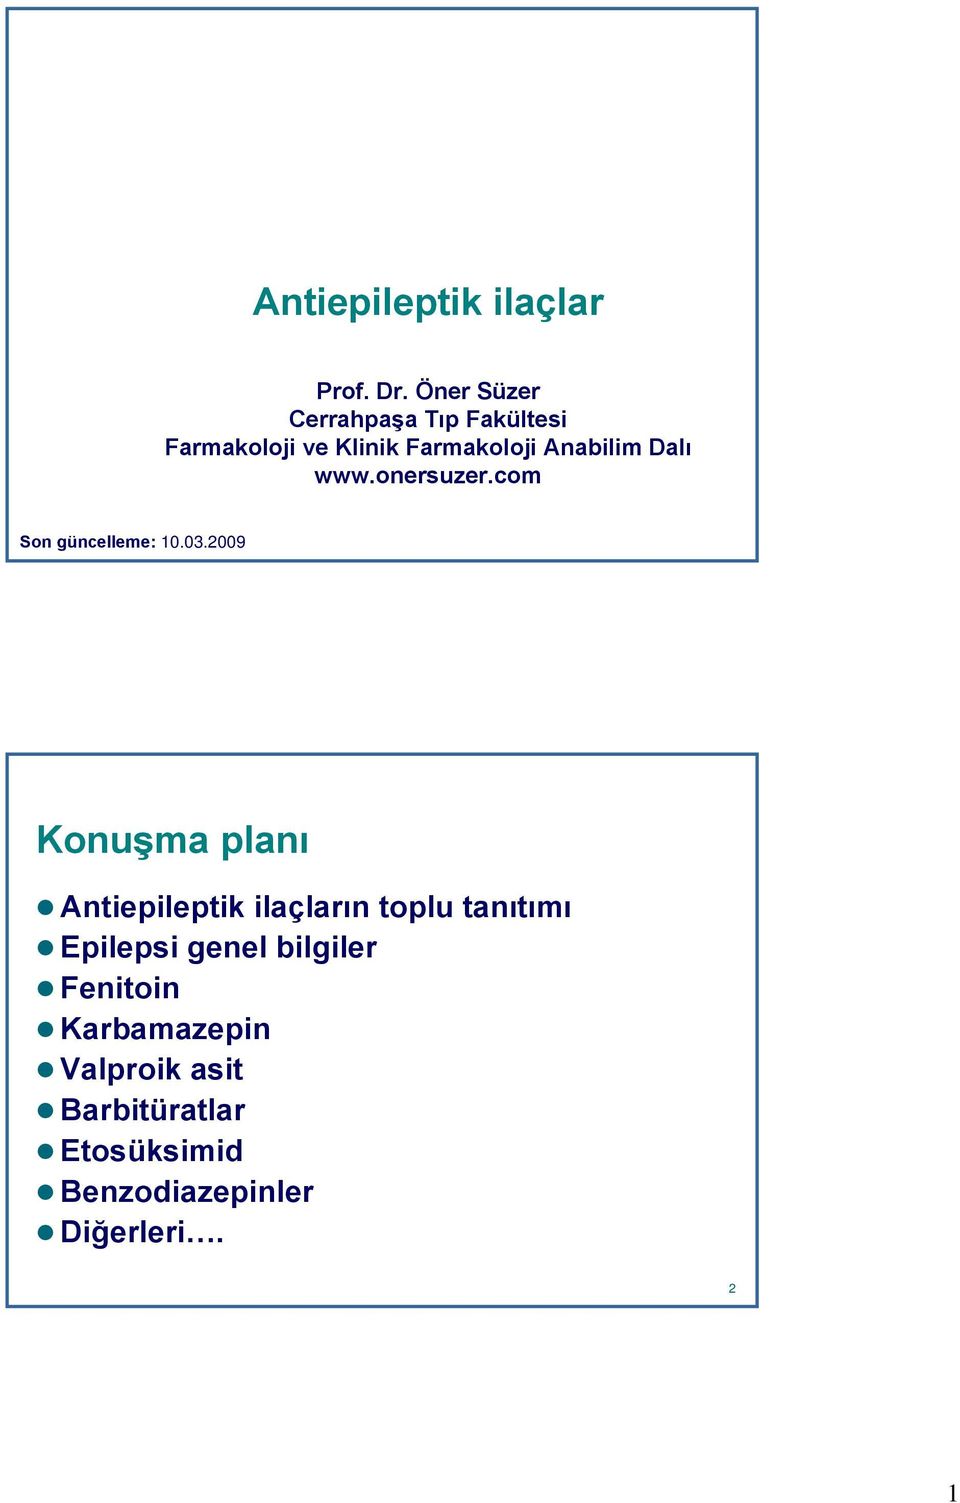 Antiepileptik ilaçlar - PDF Ücretsiz indirin